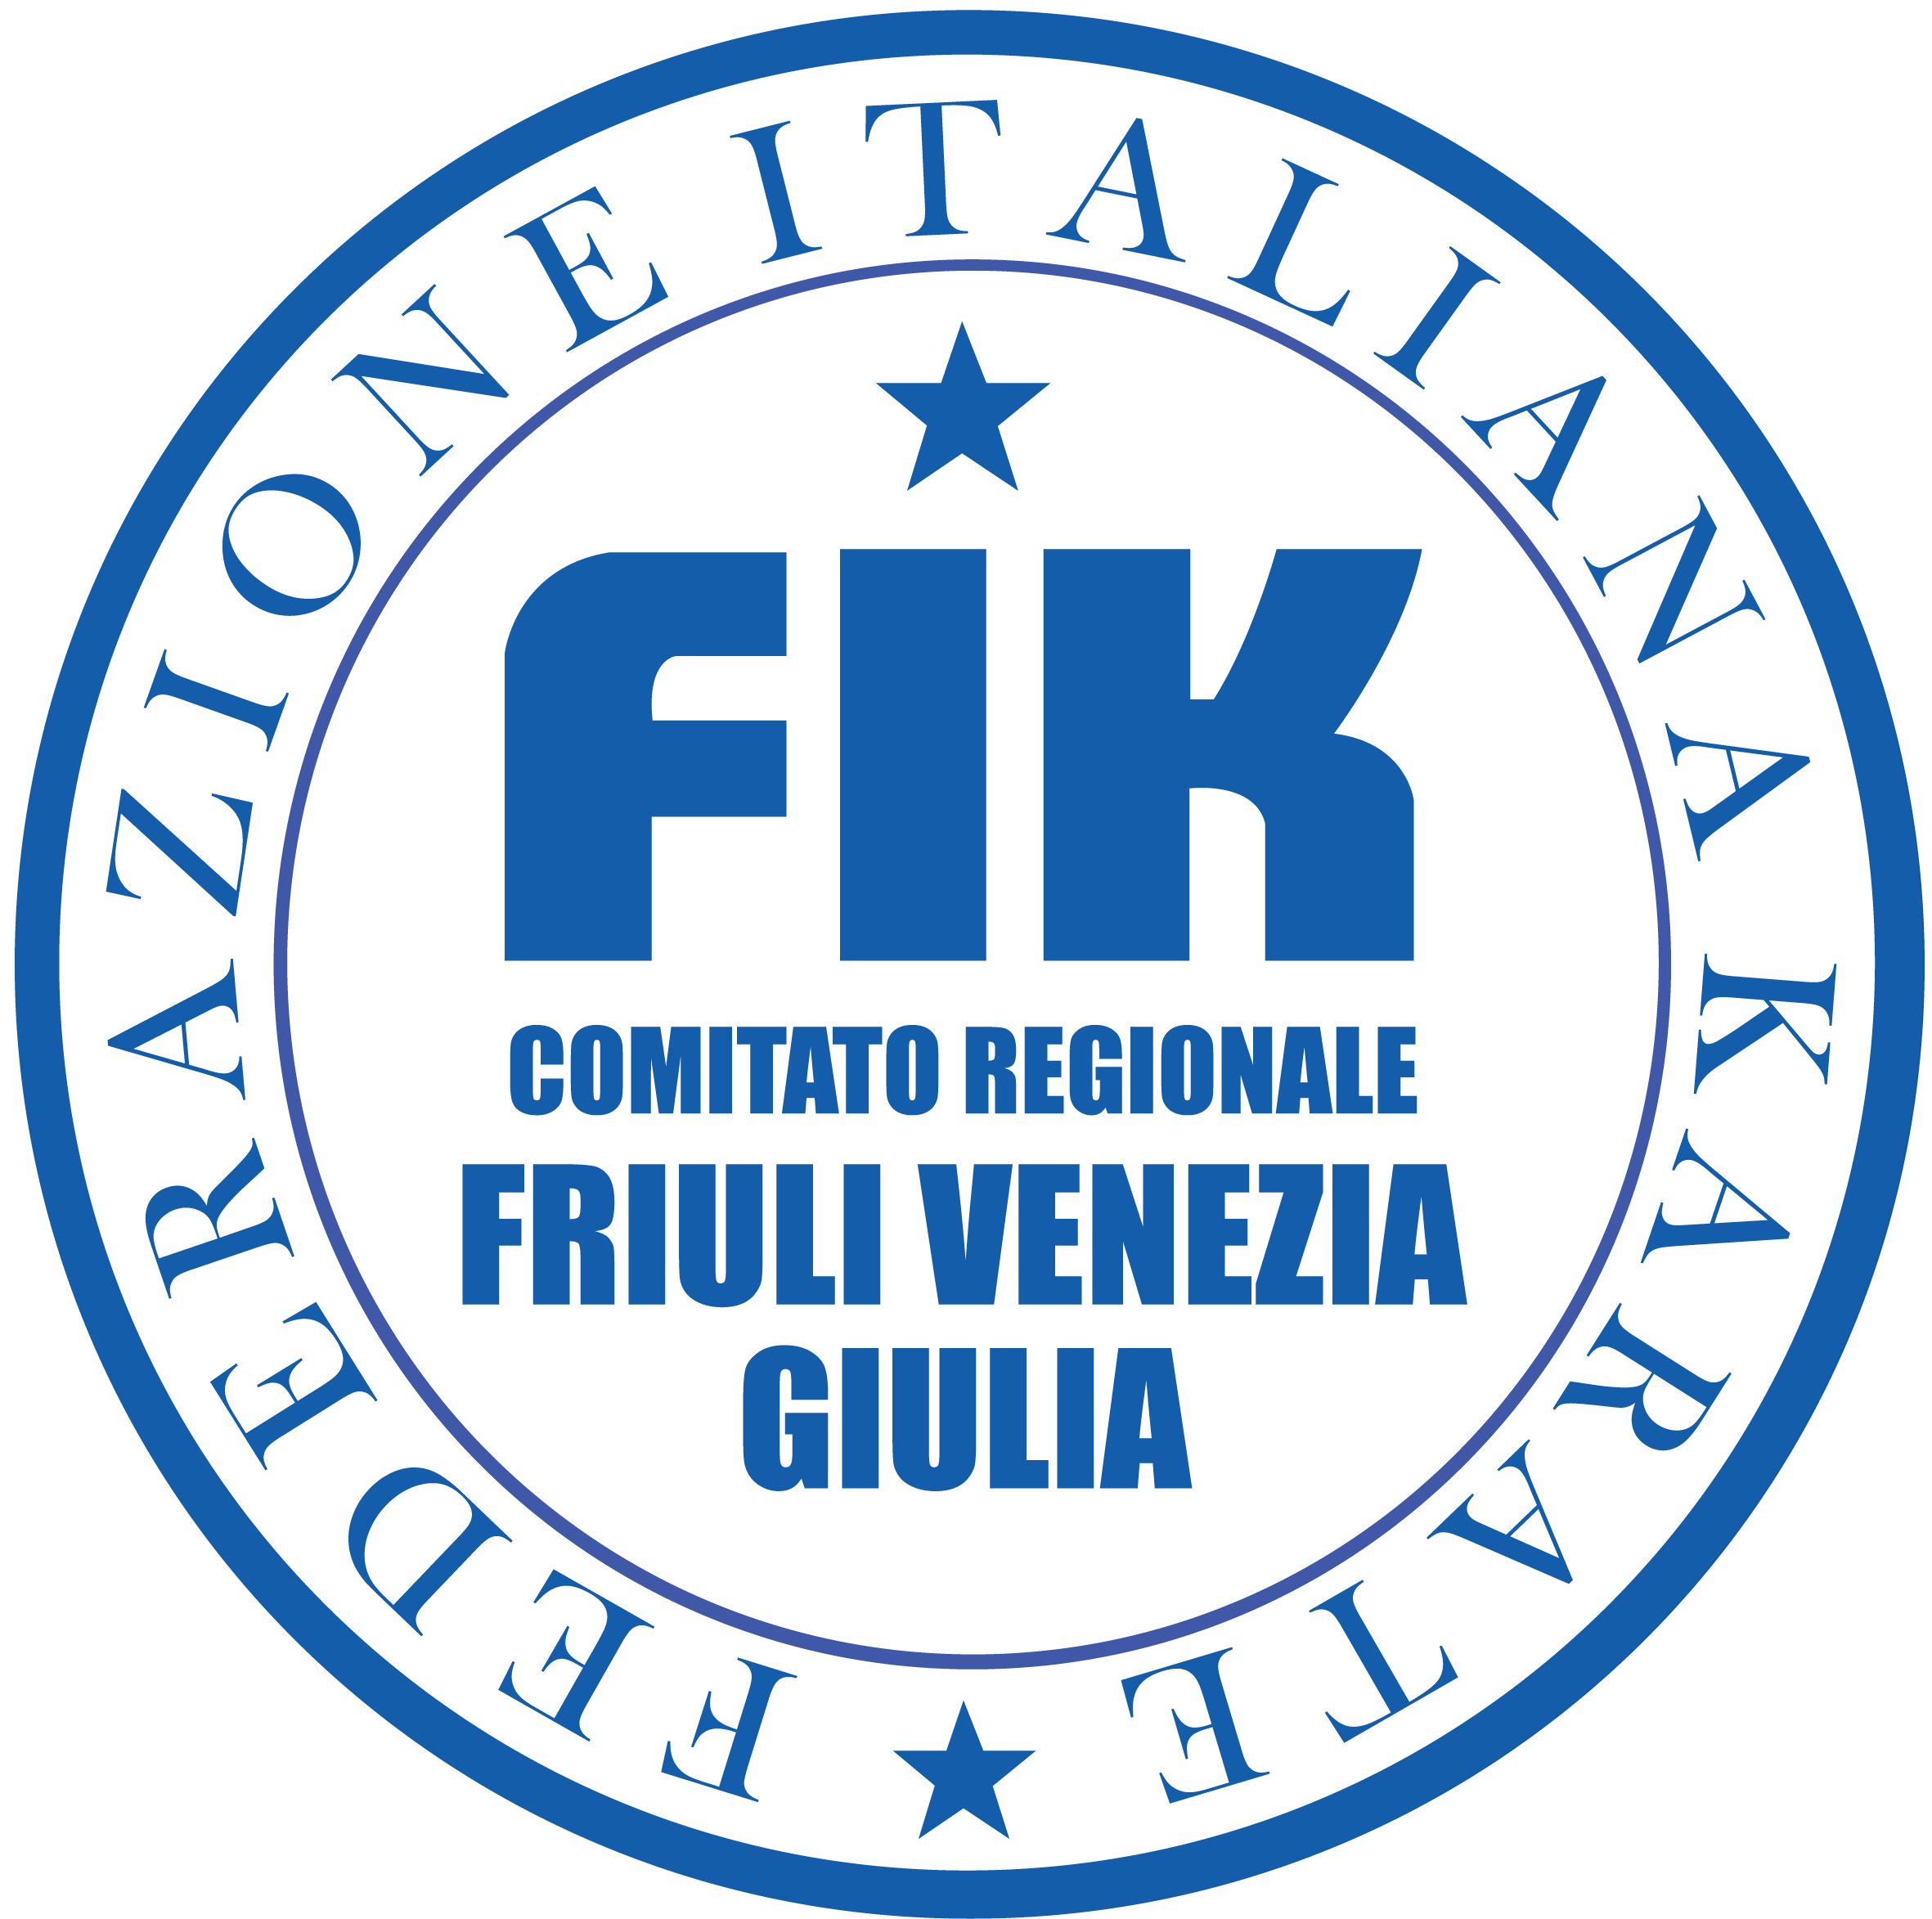 Comitato Regionale Friuli Venezia Giulia